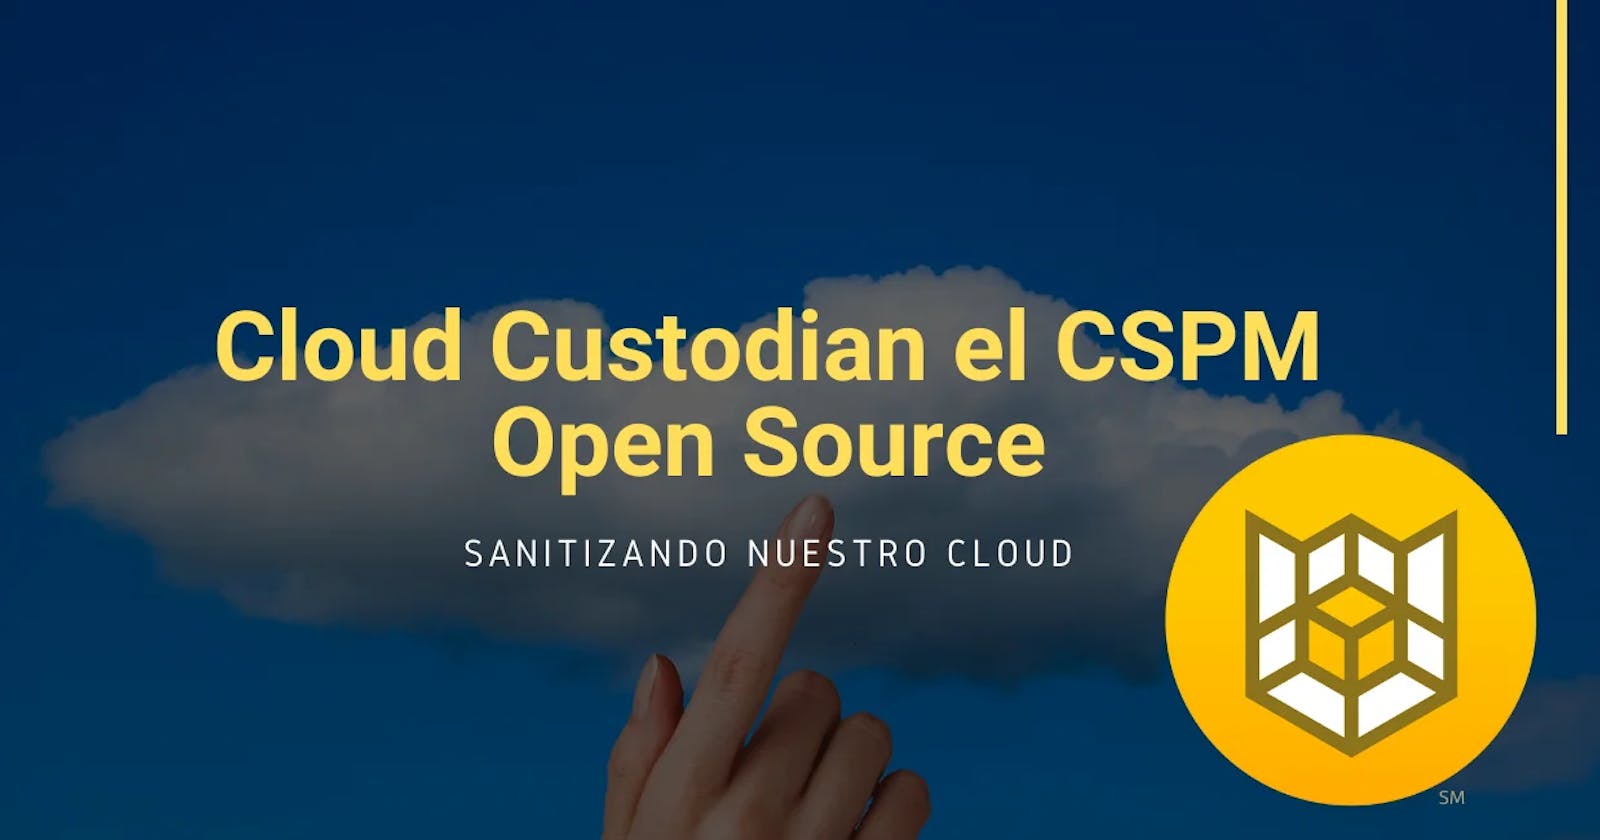 Cloud Custodian el CSPM Open Source